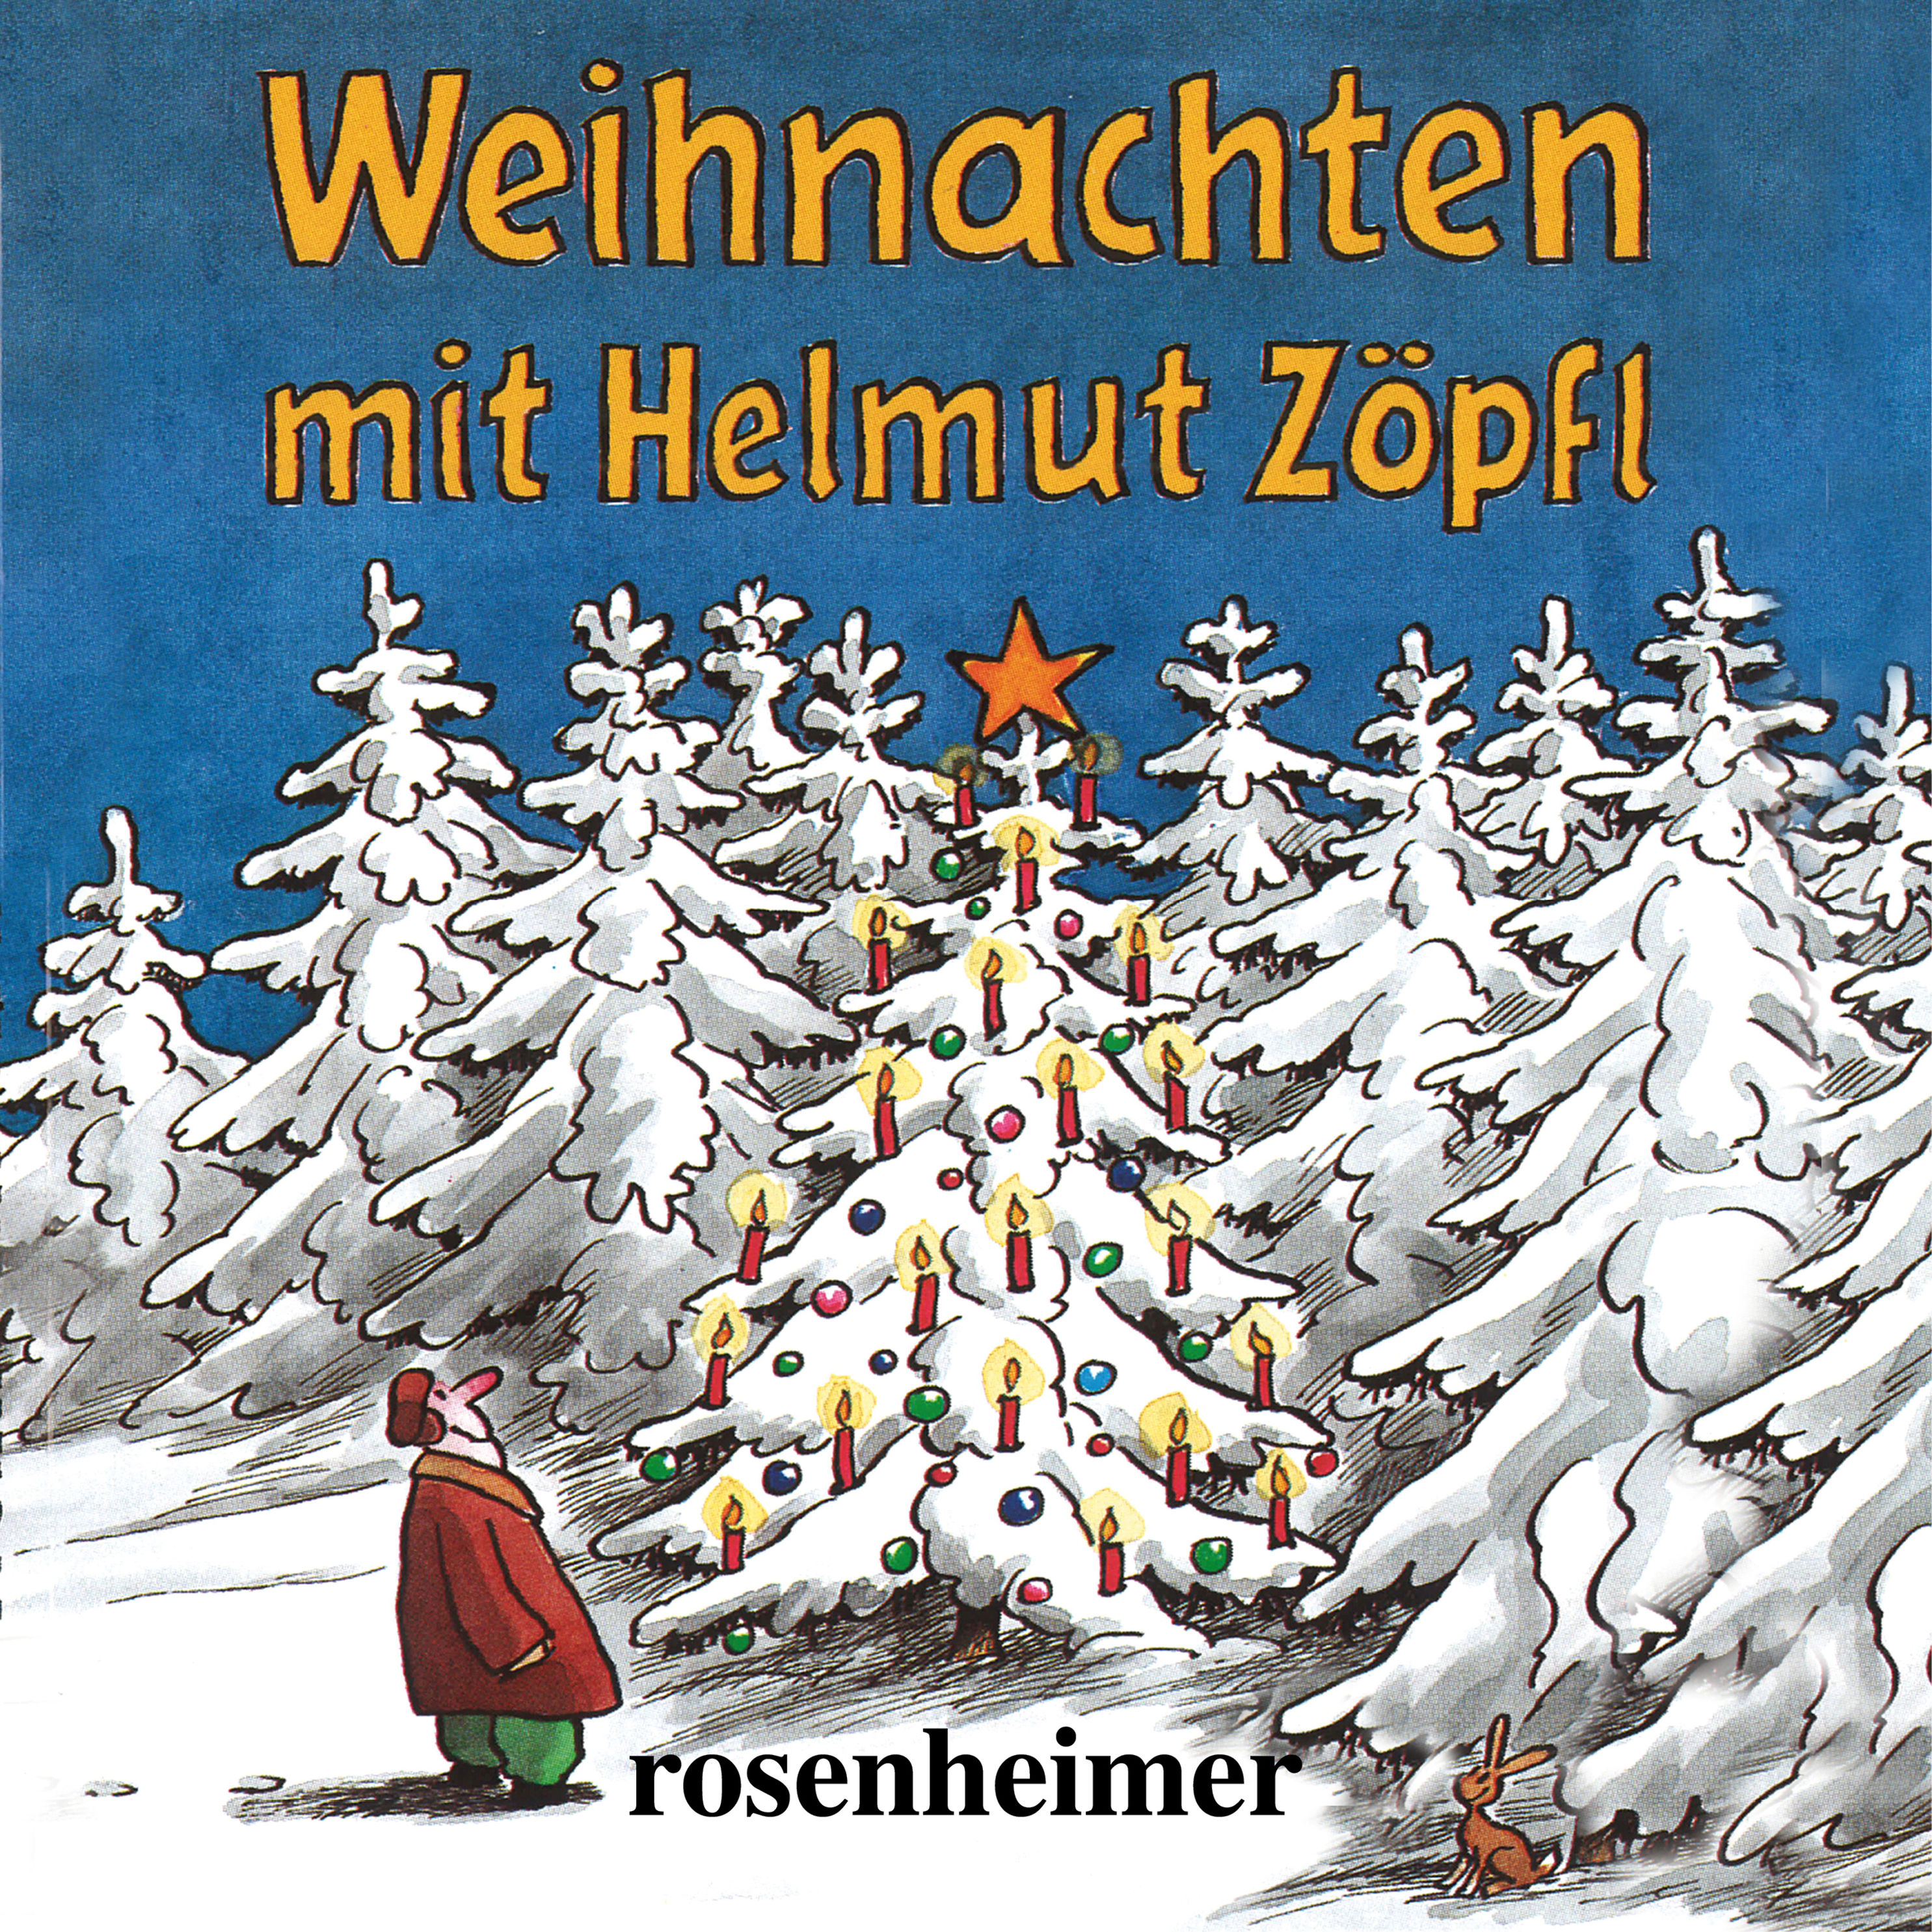 Weihnachten mit Helmut Zöpfl Hörbuch downloaden bei Weltbild.de